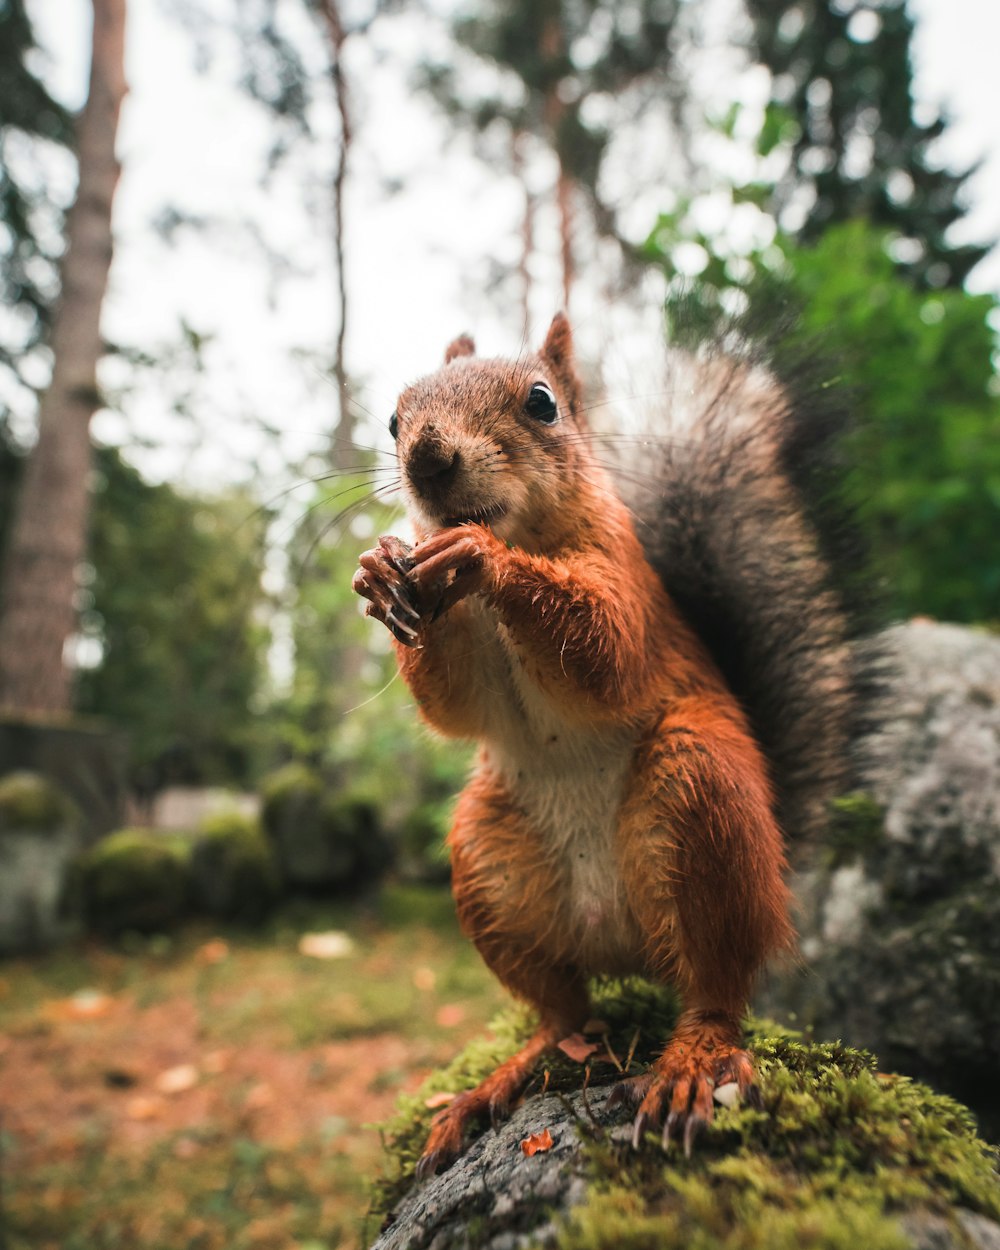 Tierfotografie von braunen Eichhörnchen